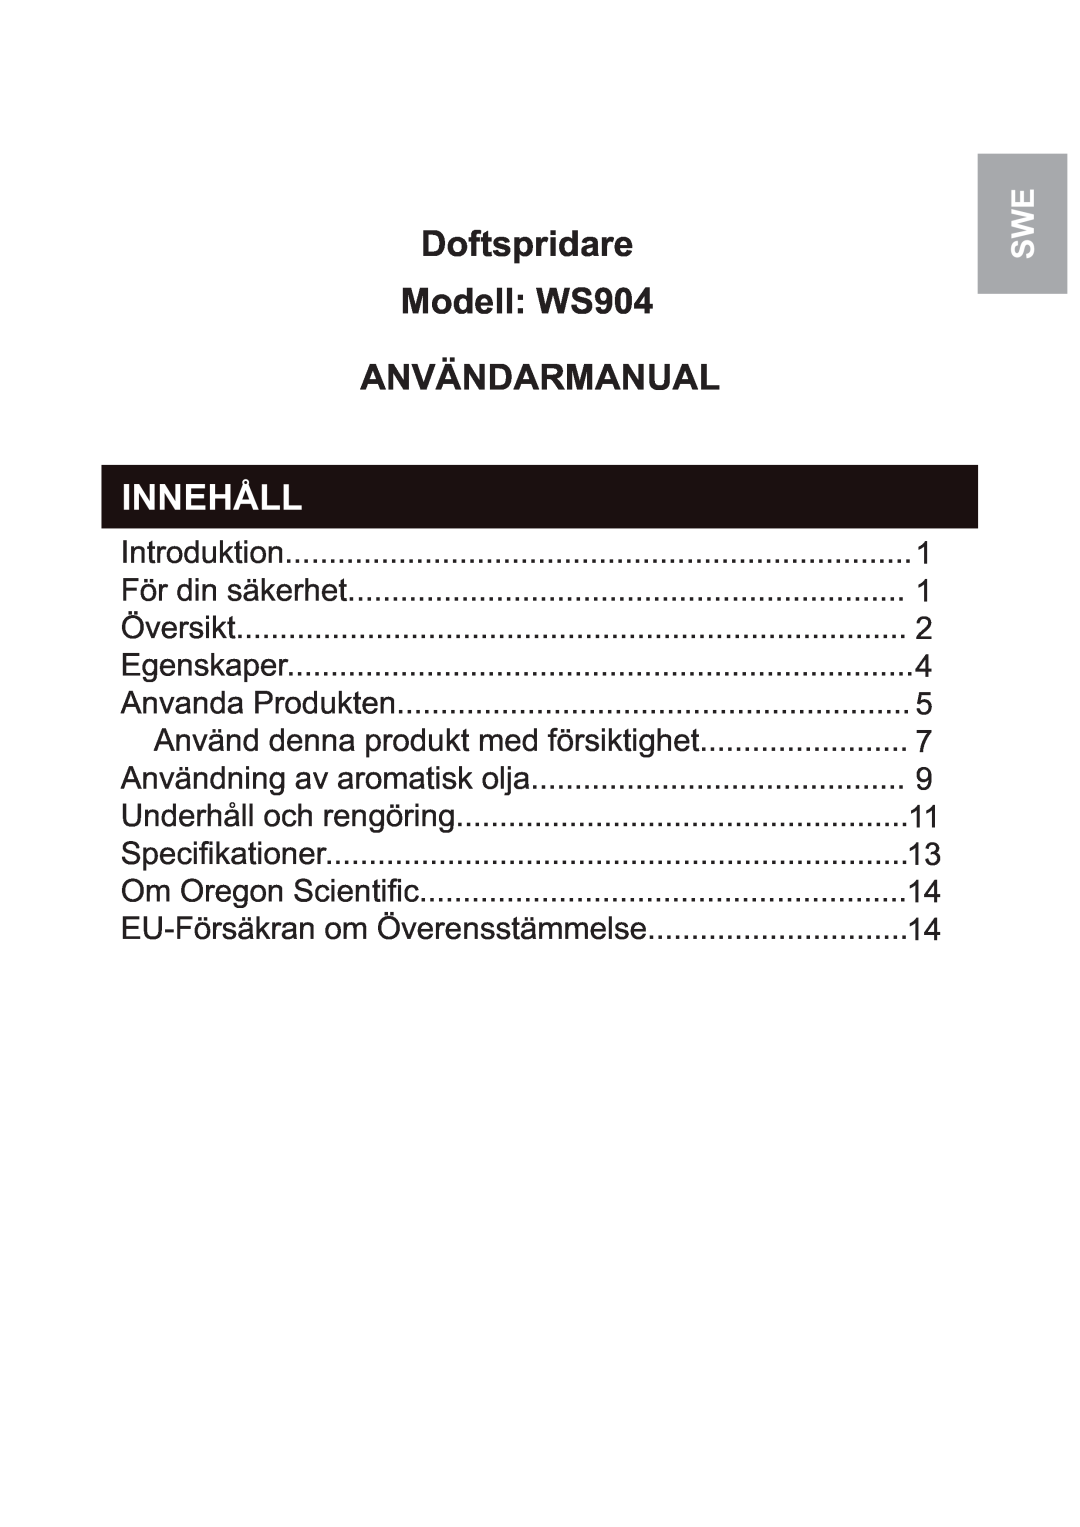 Oregon Scientific user manual Doftspridare Modell: WS904 ANVÄNDARMANUAL, Innehåll 